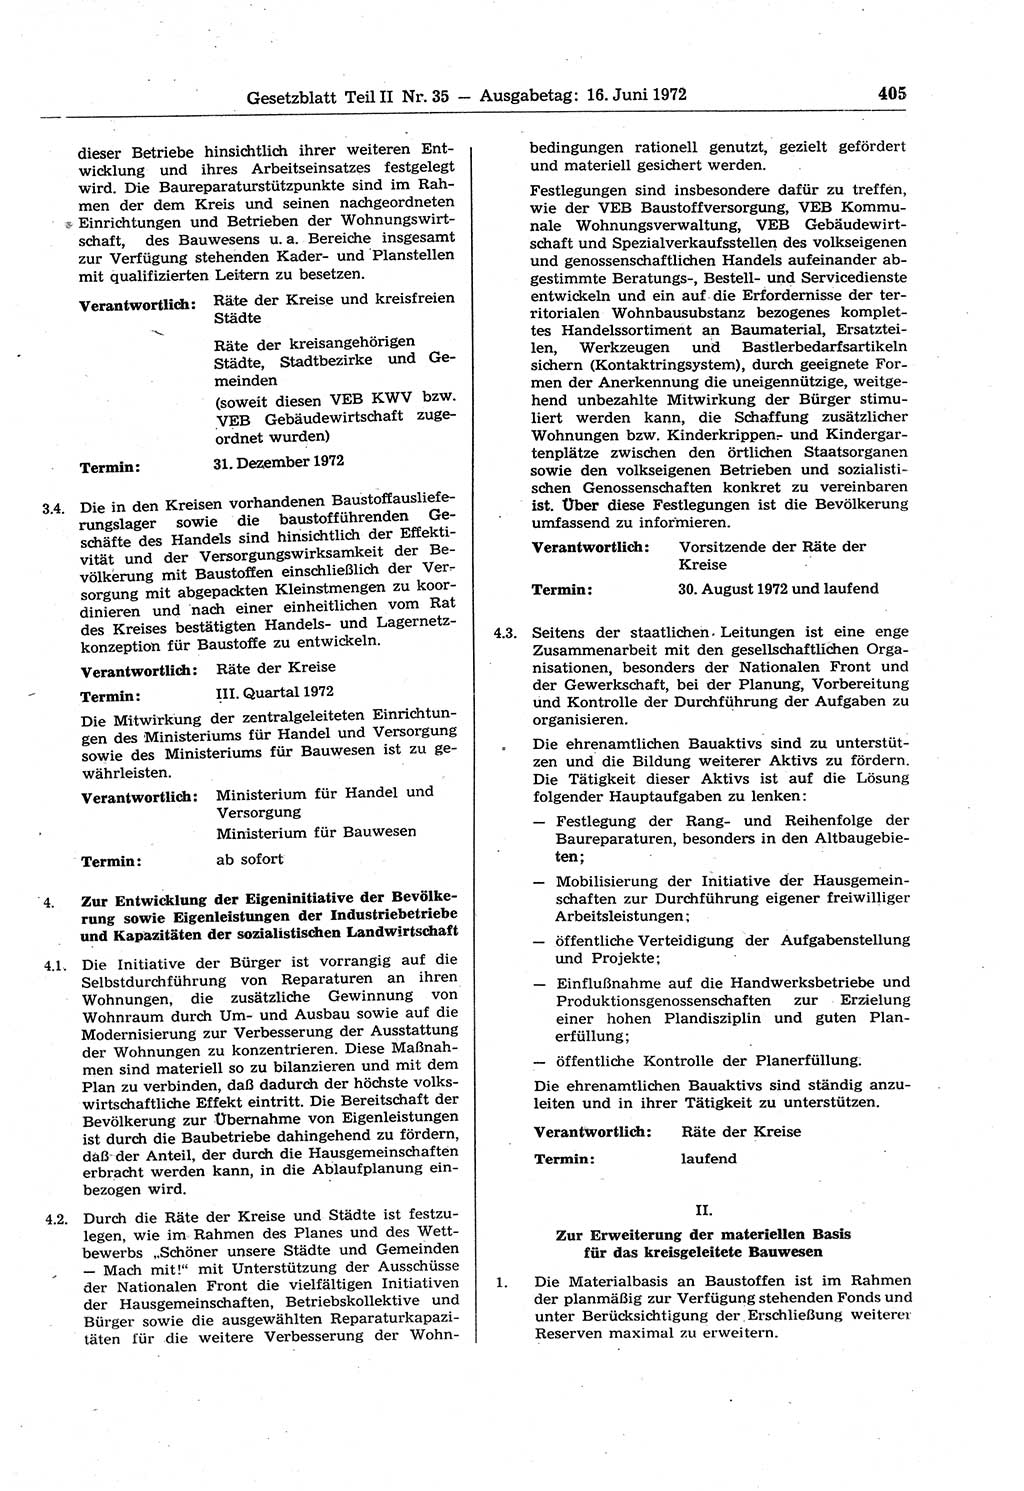 Gesetzblatt (GBl.) der Deutschen Demokratischen Republik (DDR) Teil ⅠⅠ 1972, Seite 405 (GBl. DDR ⅠⅠ 1972, S. 405)